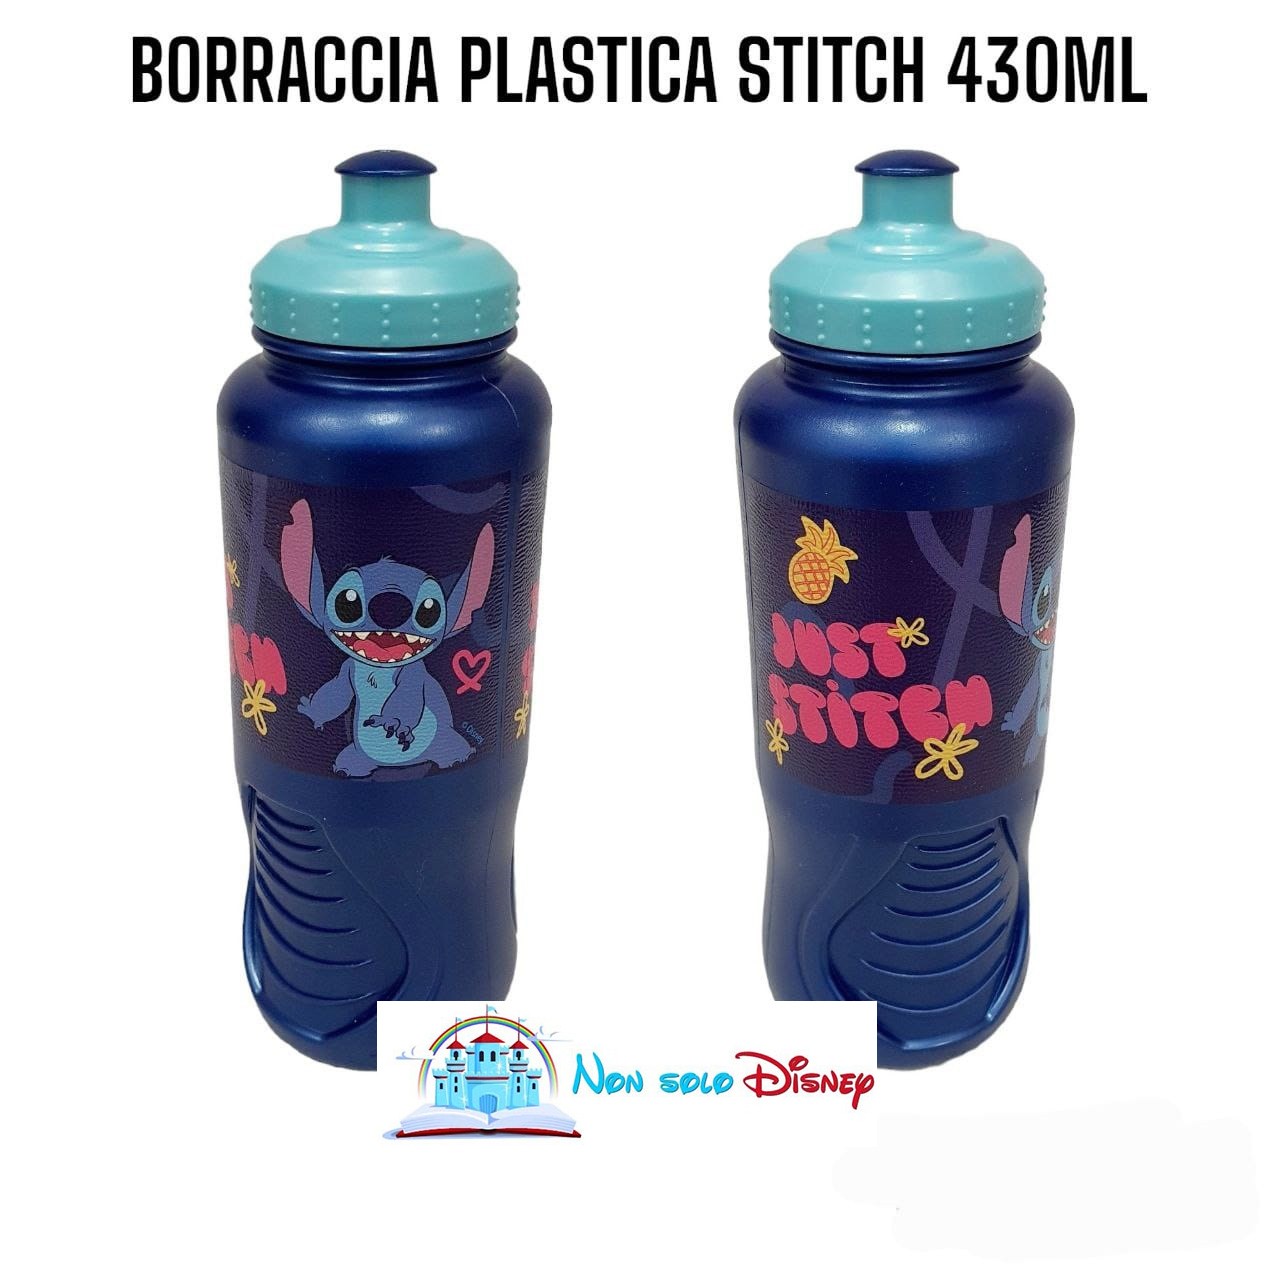 borraccia-plastica-ergo-Stitch